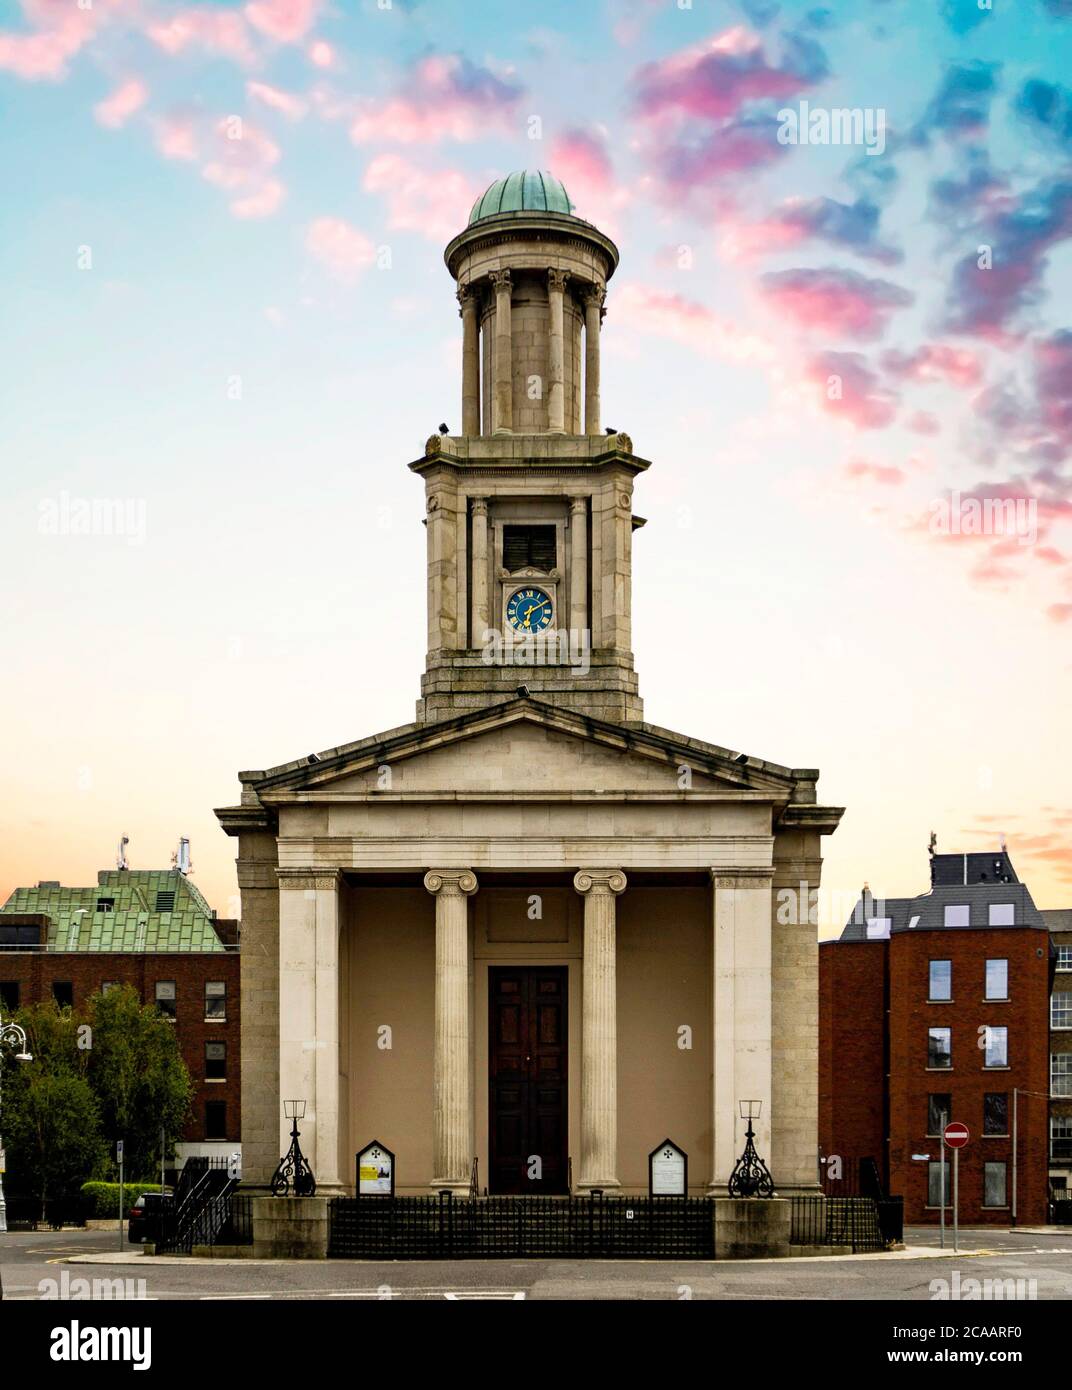 Église anglicane St Stephen, également connue sous le nom de Pepper Canister Church, Mount Street Crescent, Dublin, Irlande. Le nom du pseudo fait référence à sa forme. Banque D'Images